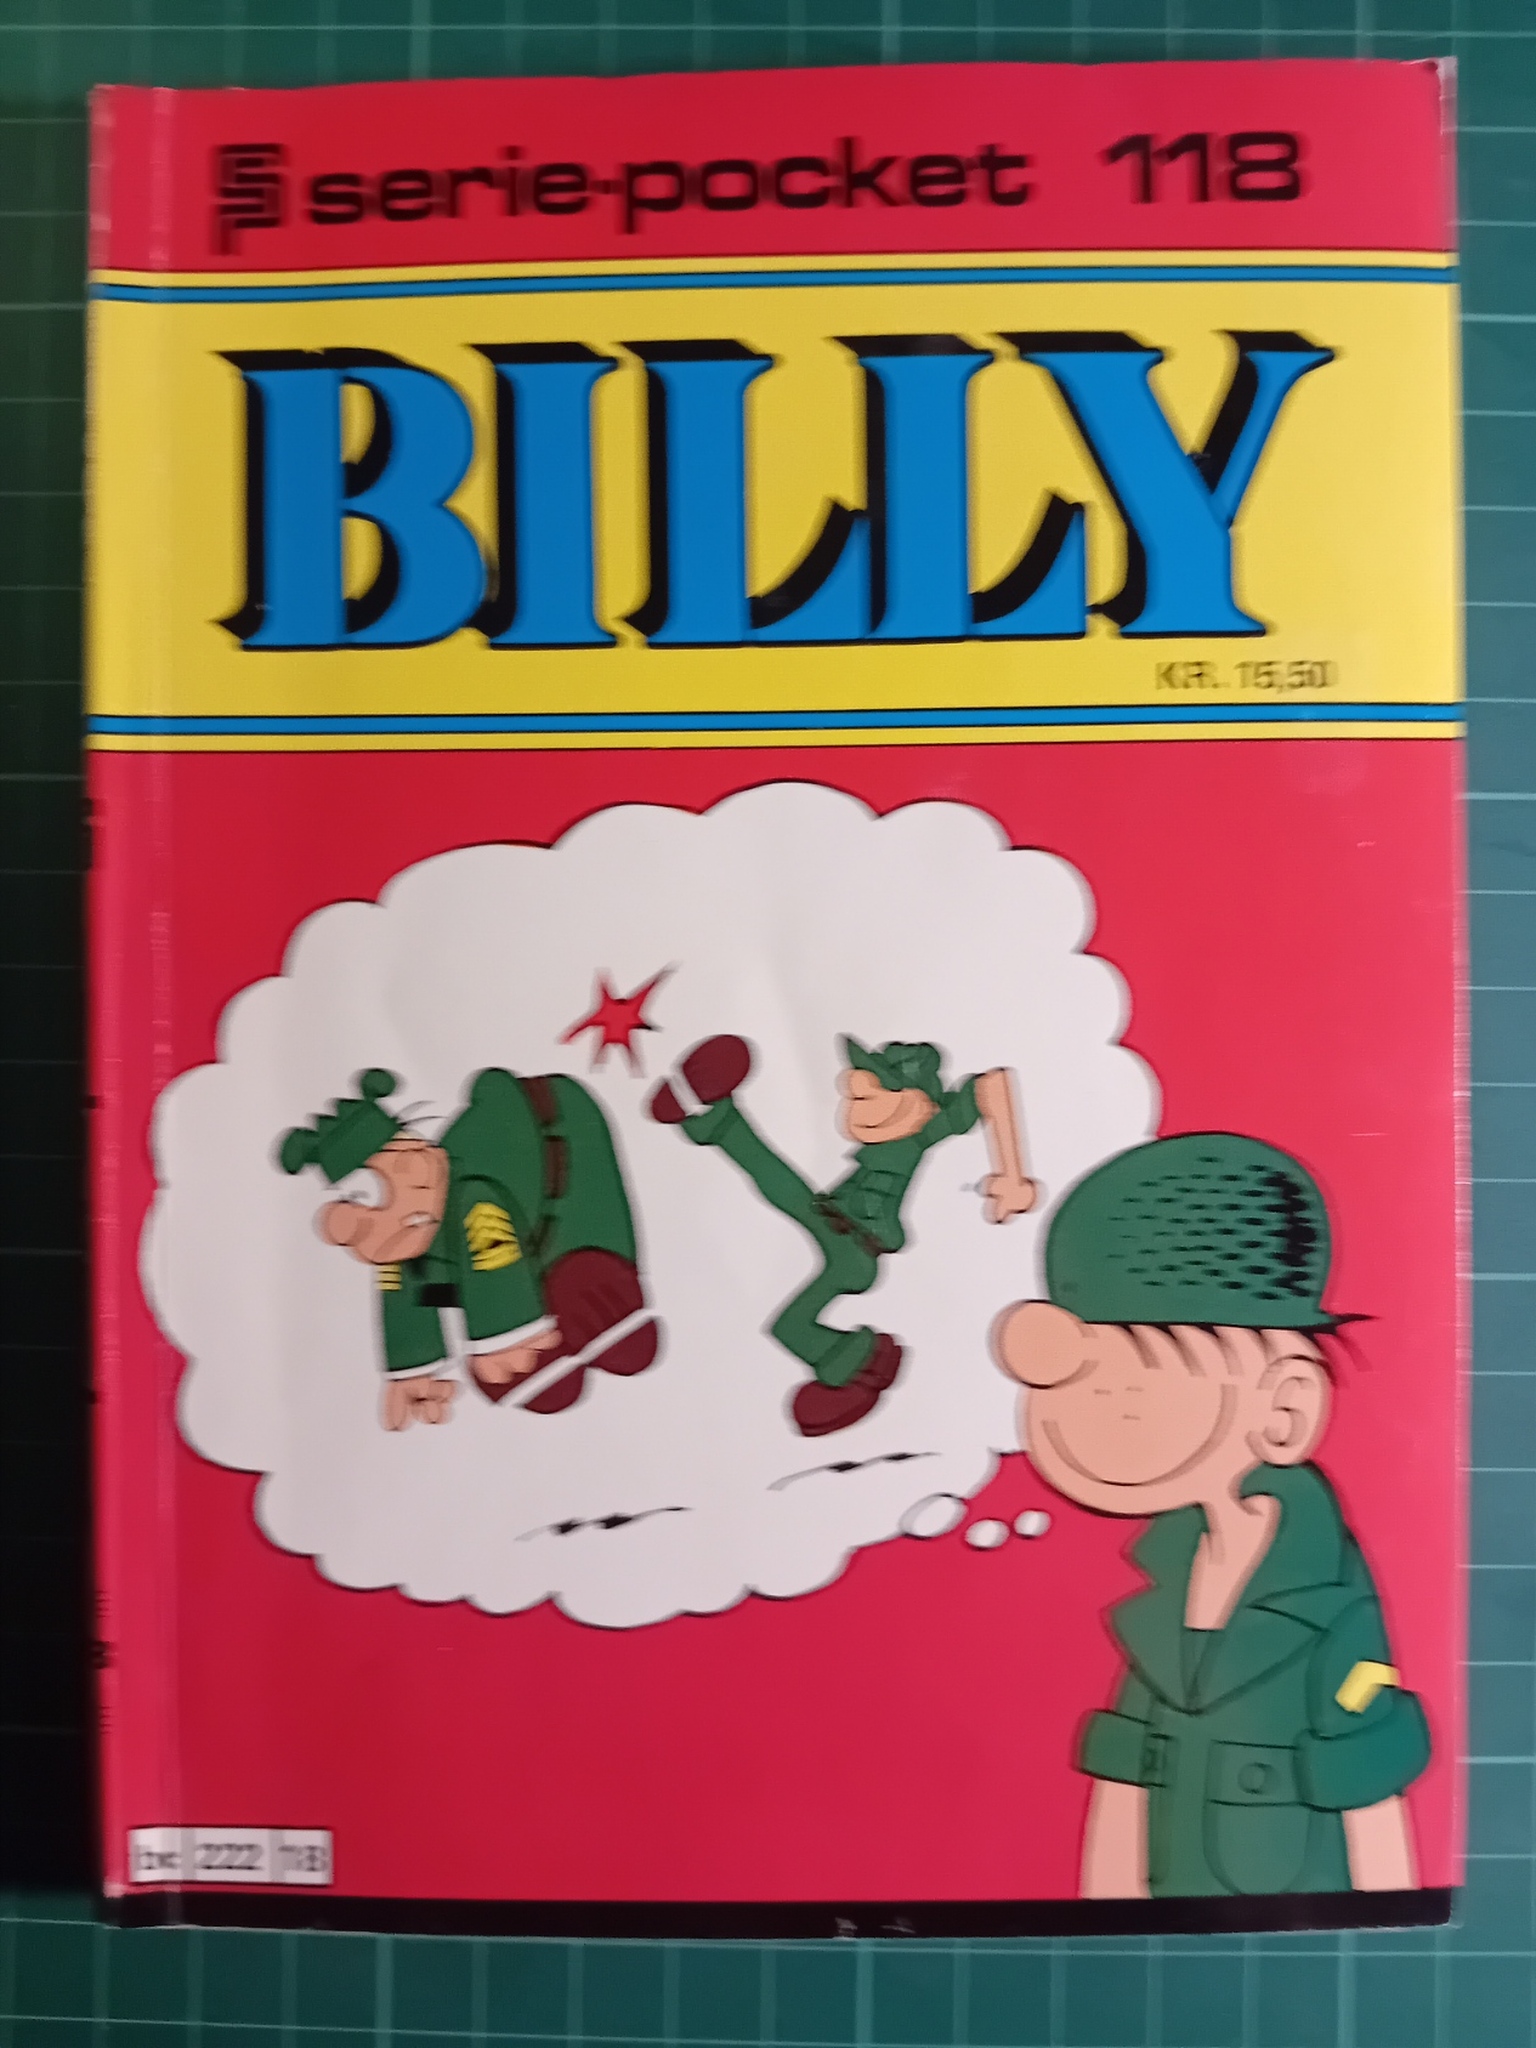 Serie-pocket 118 : Billy